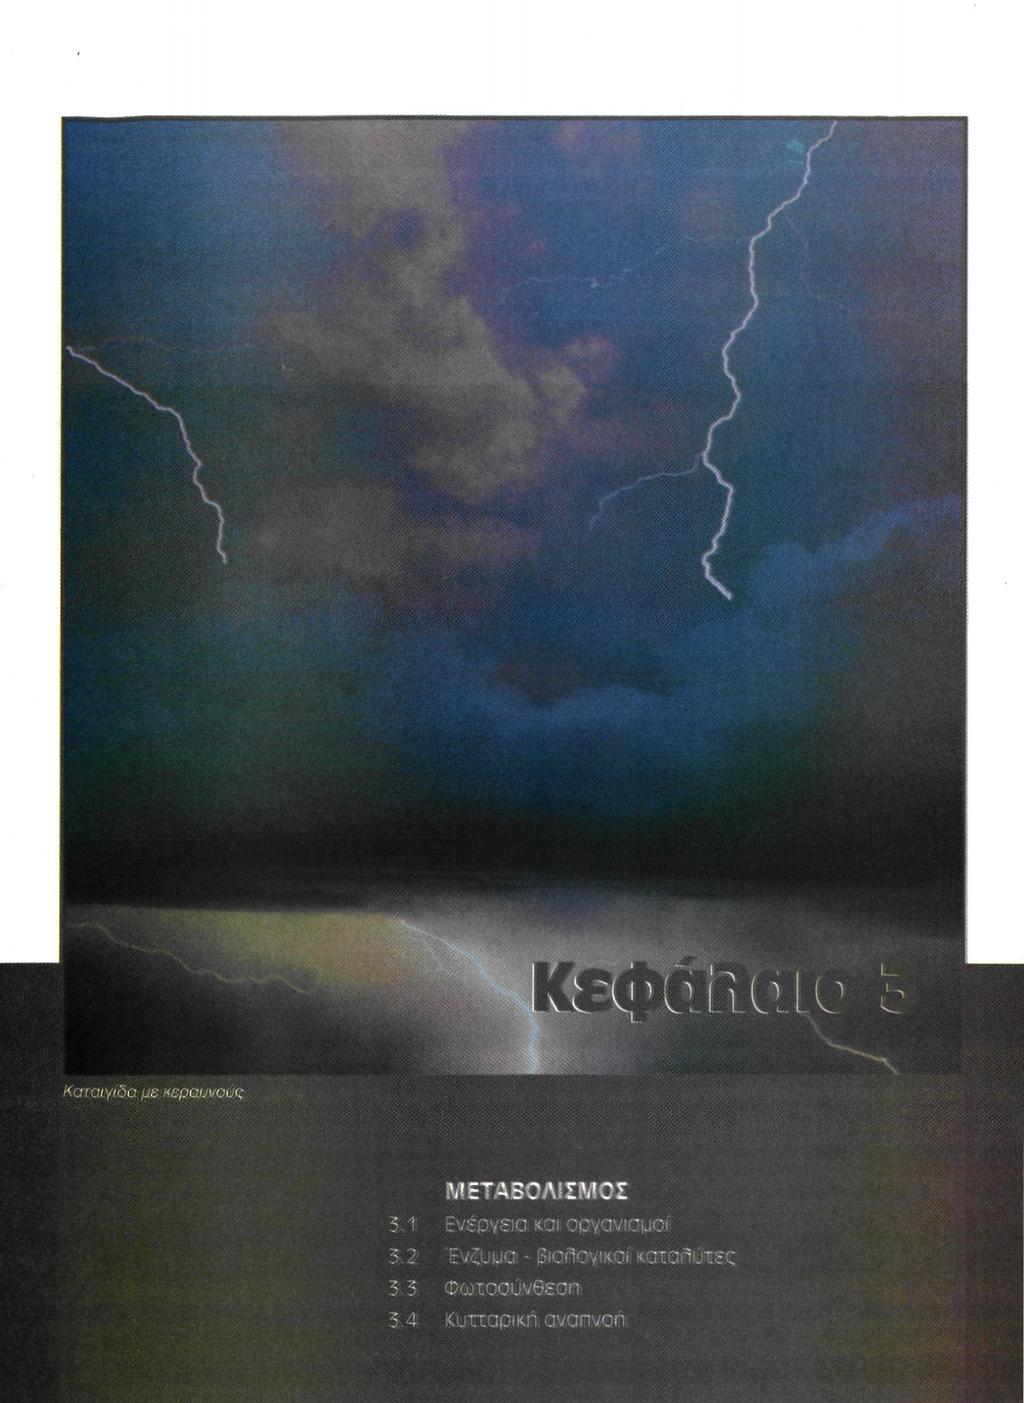 Καταιγίδα με κεραυνούς ΜΕΤΑΒΟΛΙΣΜΟΣ 3.1 Ενεργεία και οργανισμοί 3.